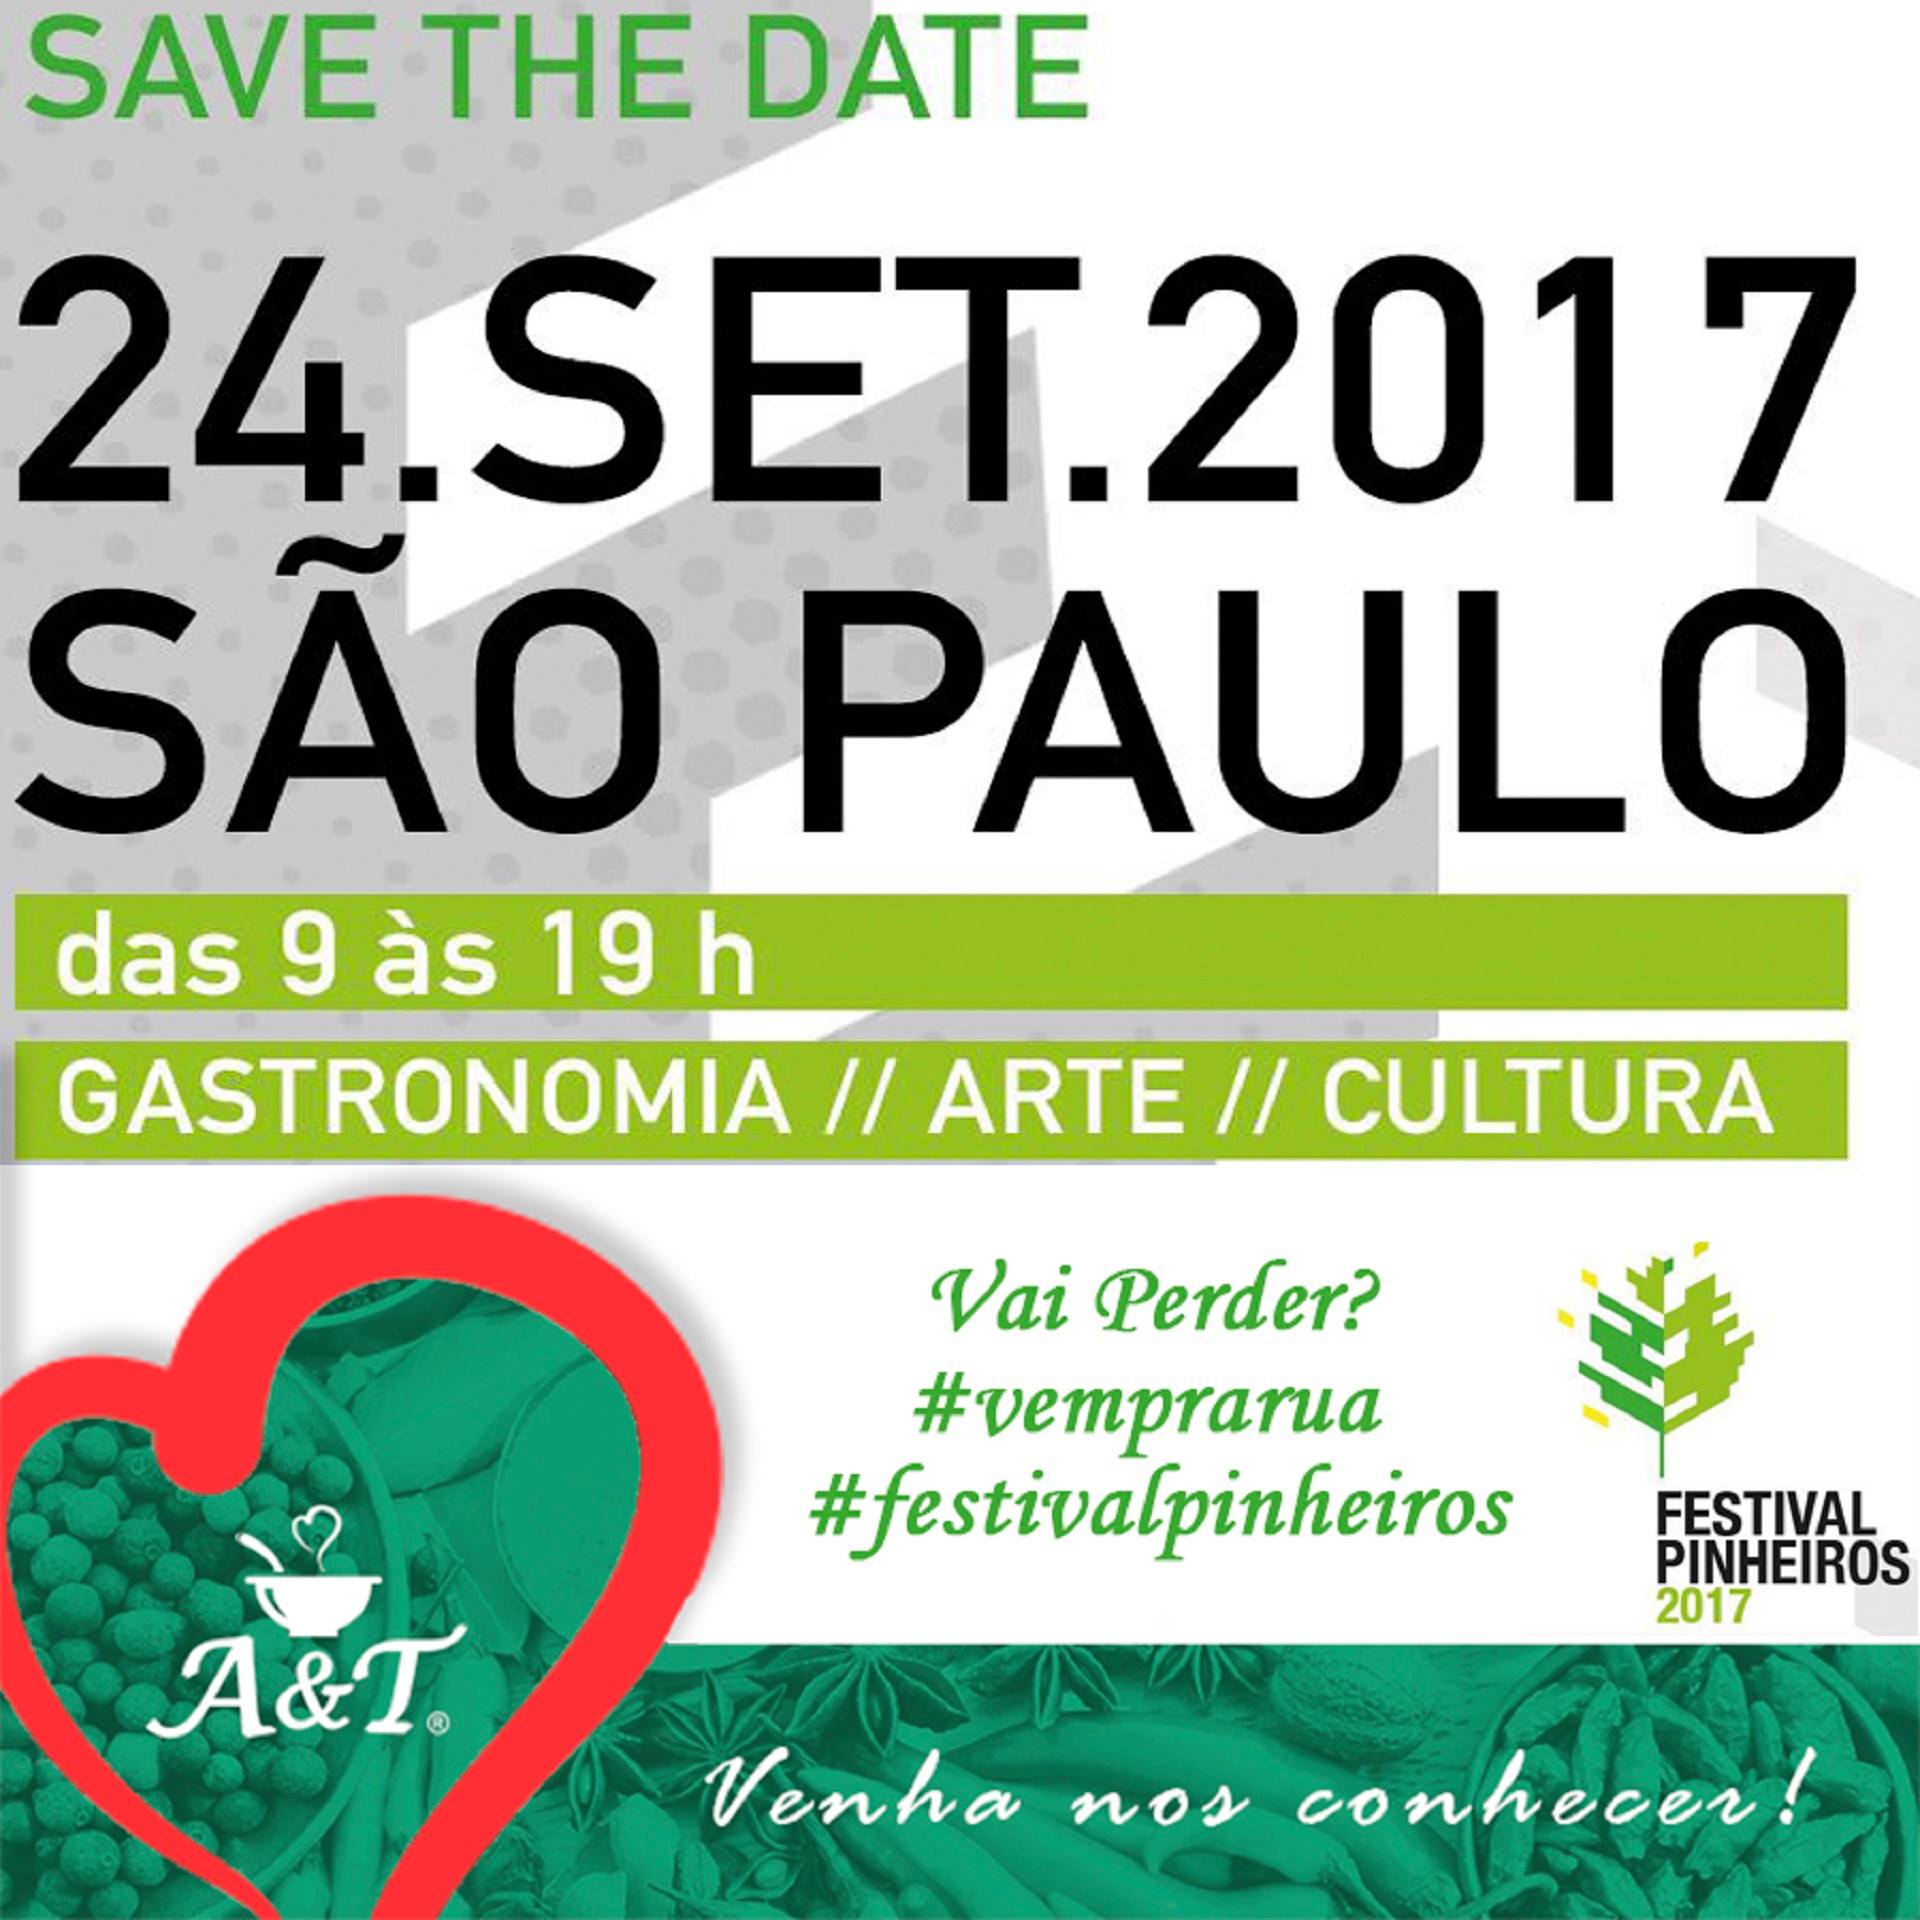 FESTIVAL DE CULTURA INDIANA COM ENTRADA GRATUITA EM SÃO PAULO